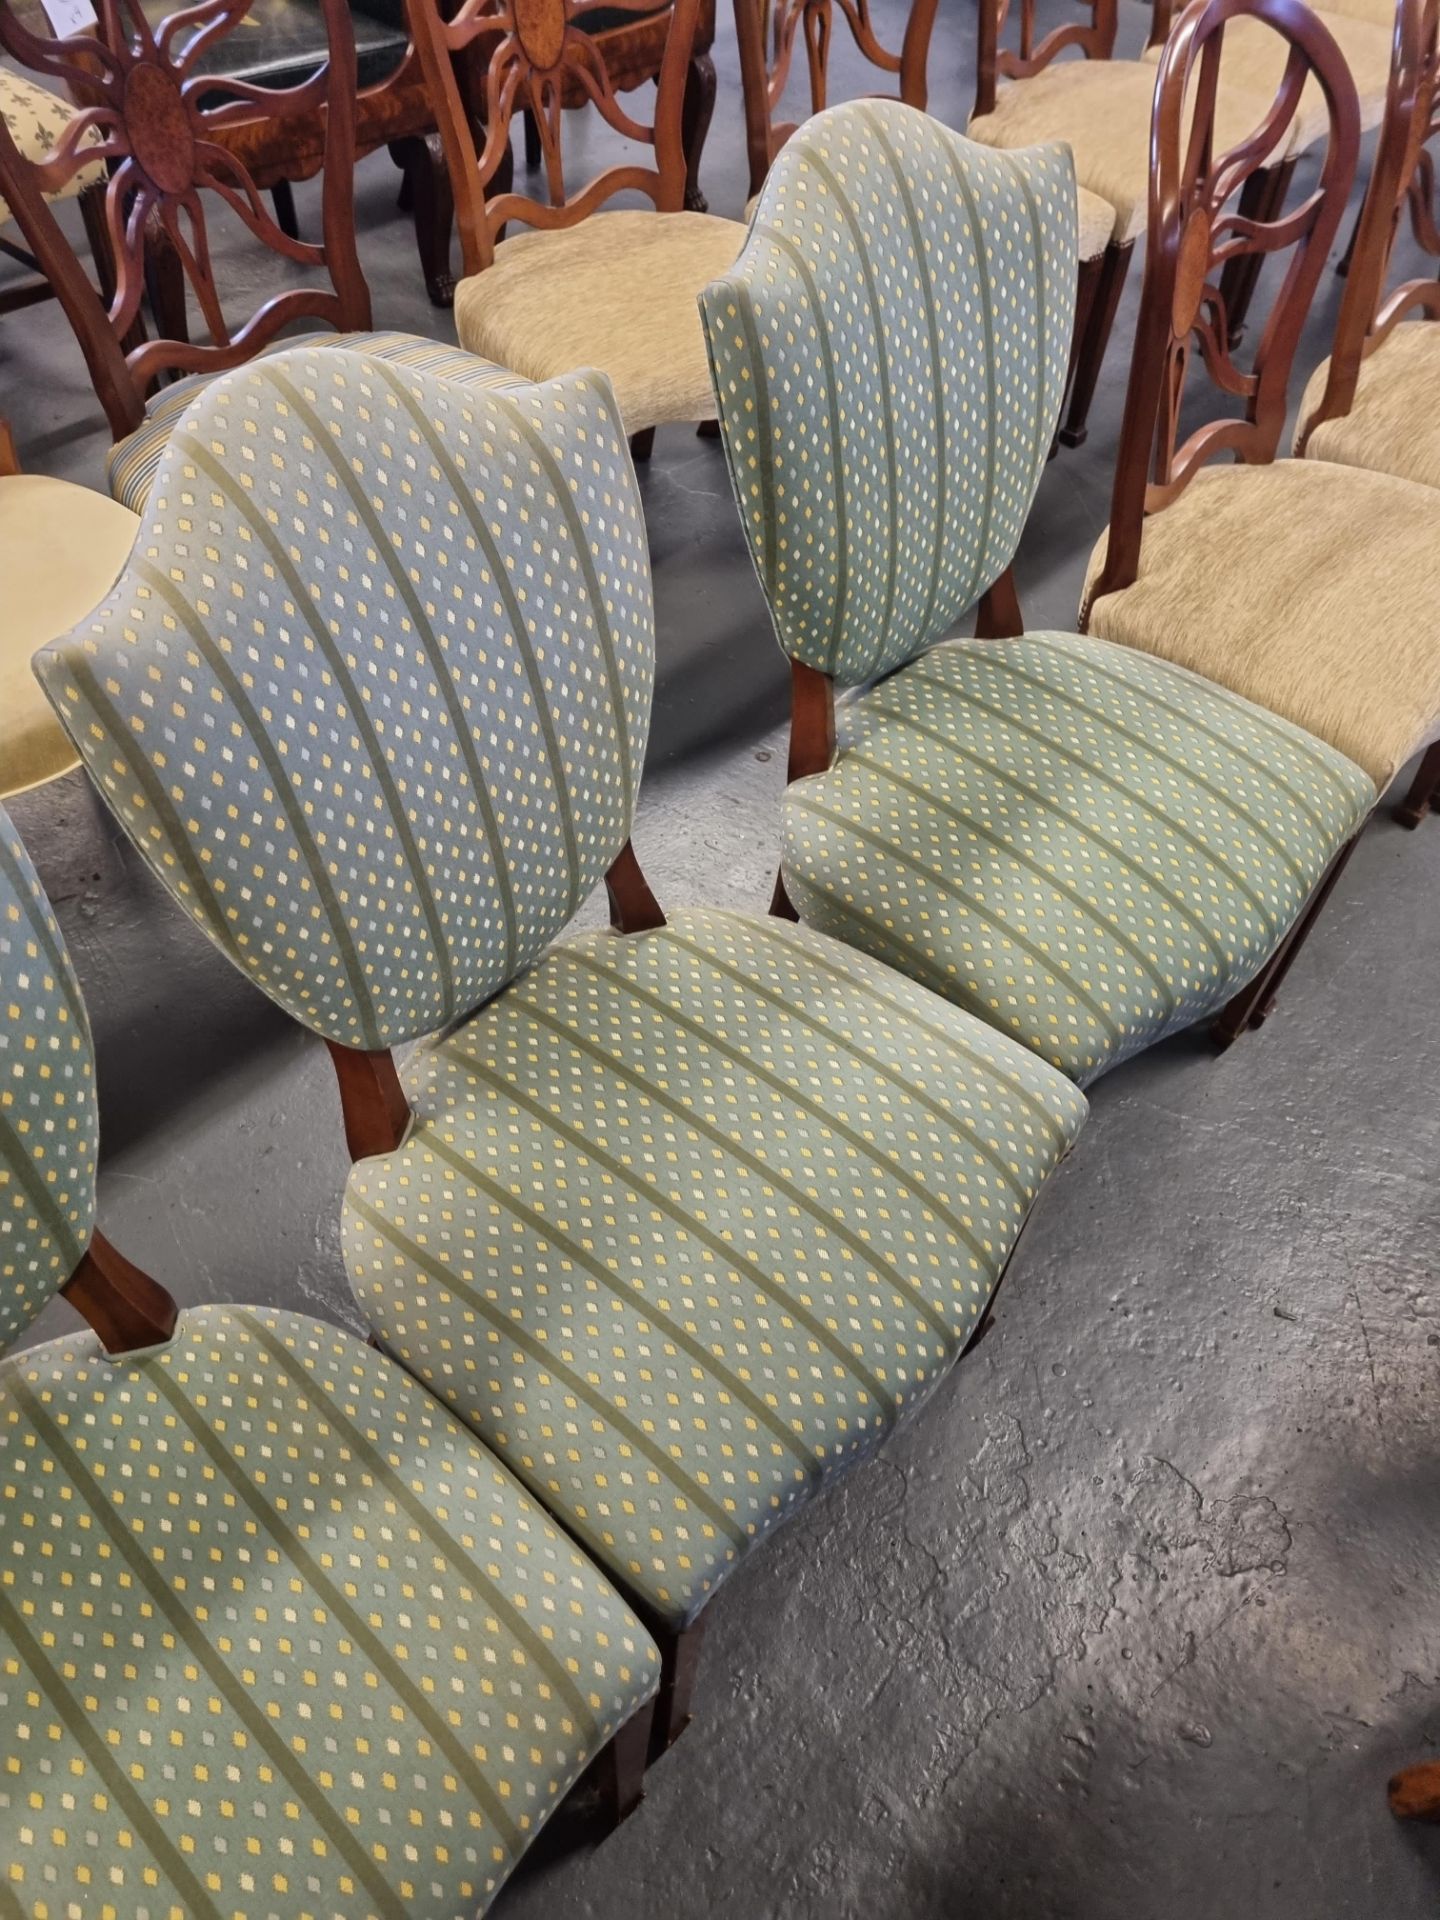 5 X Arthur Brett Upholstered Shield Back Chairs In Green Patterned Bespoke Upholstery The Shield - Bild 5 aus 5